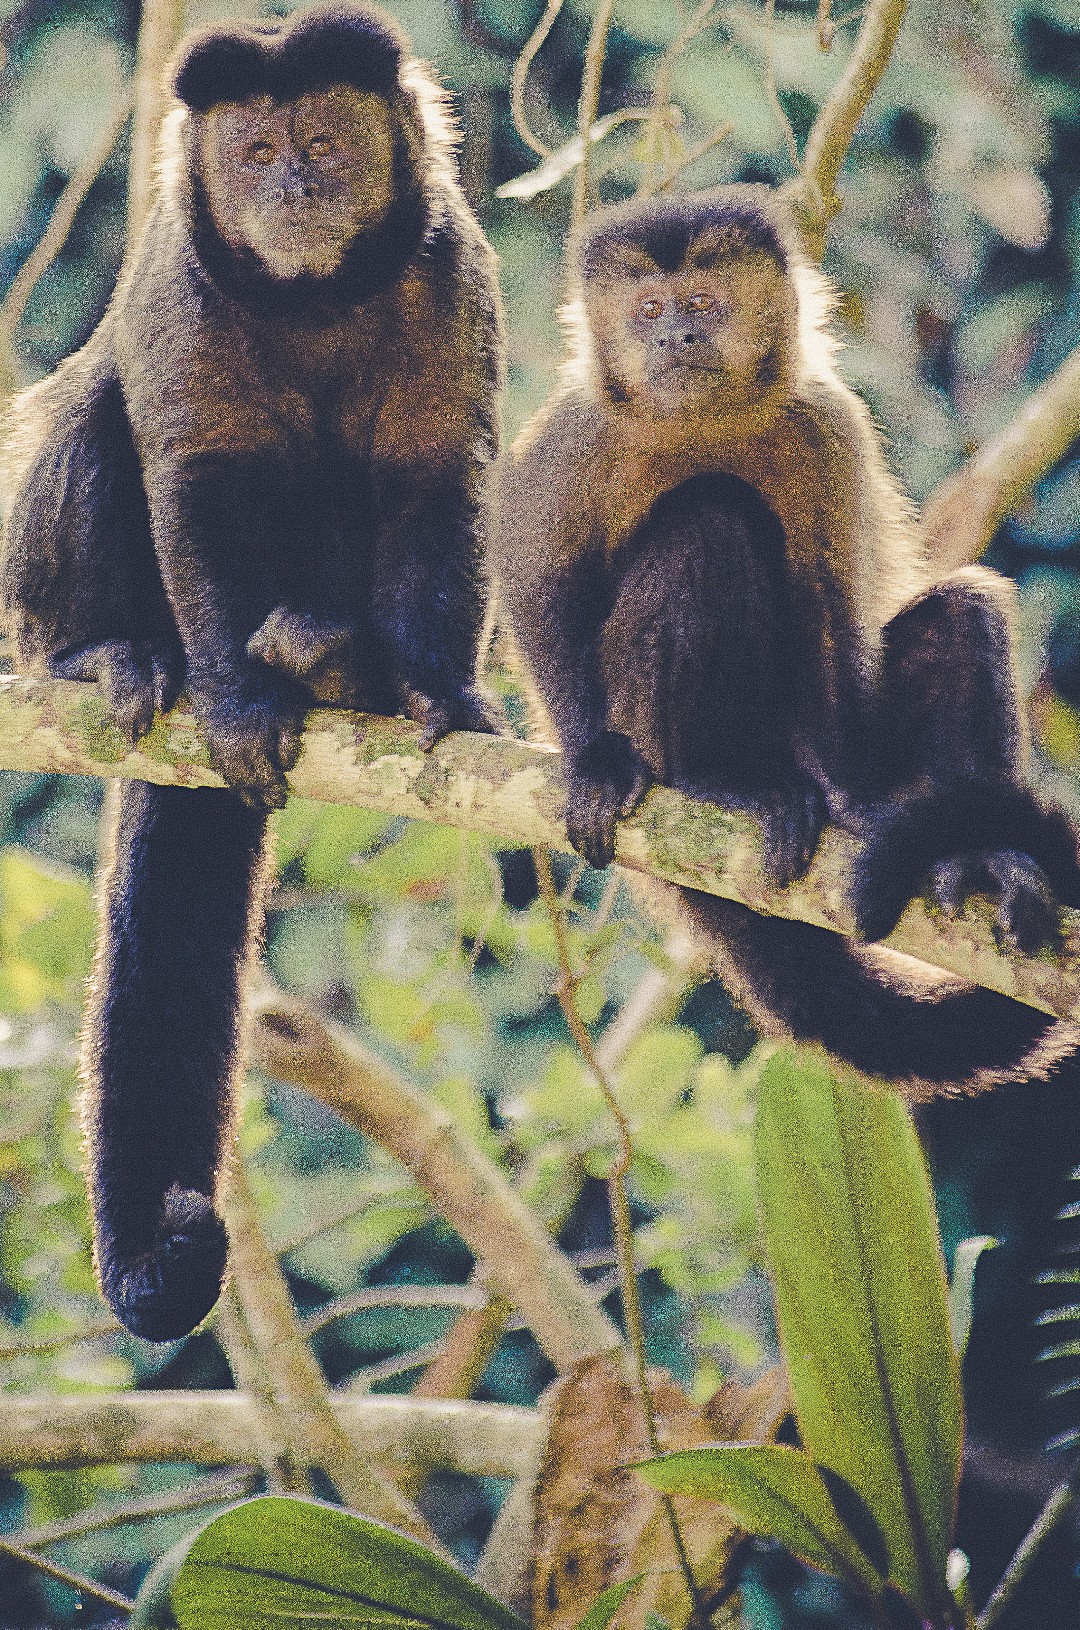 Robust capuchin monkeys (Sapajus)